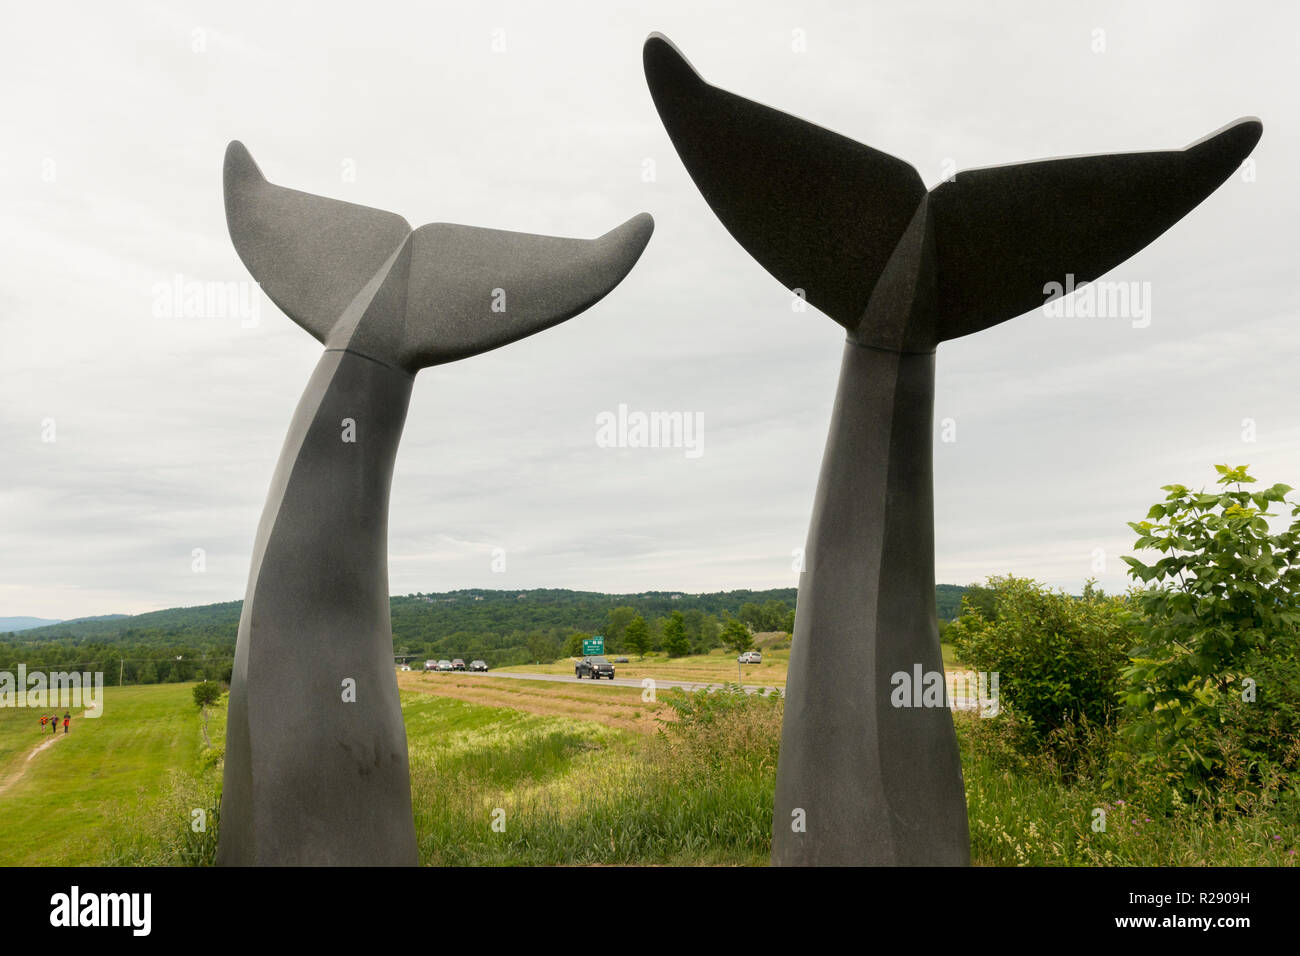 Whales Trails sculpture walking path Burlington Vermont Stock Photo